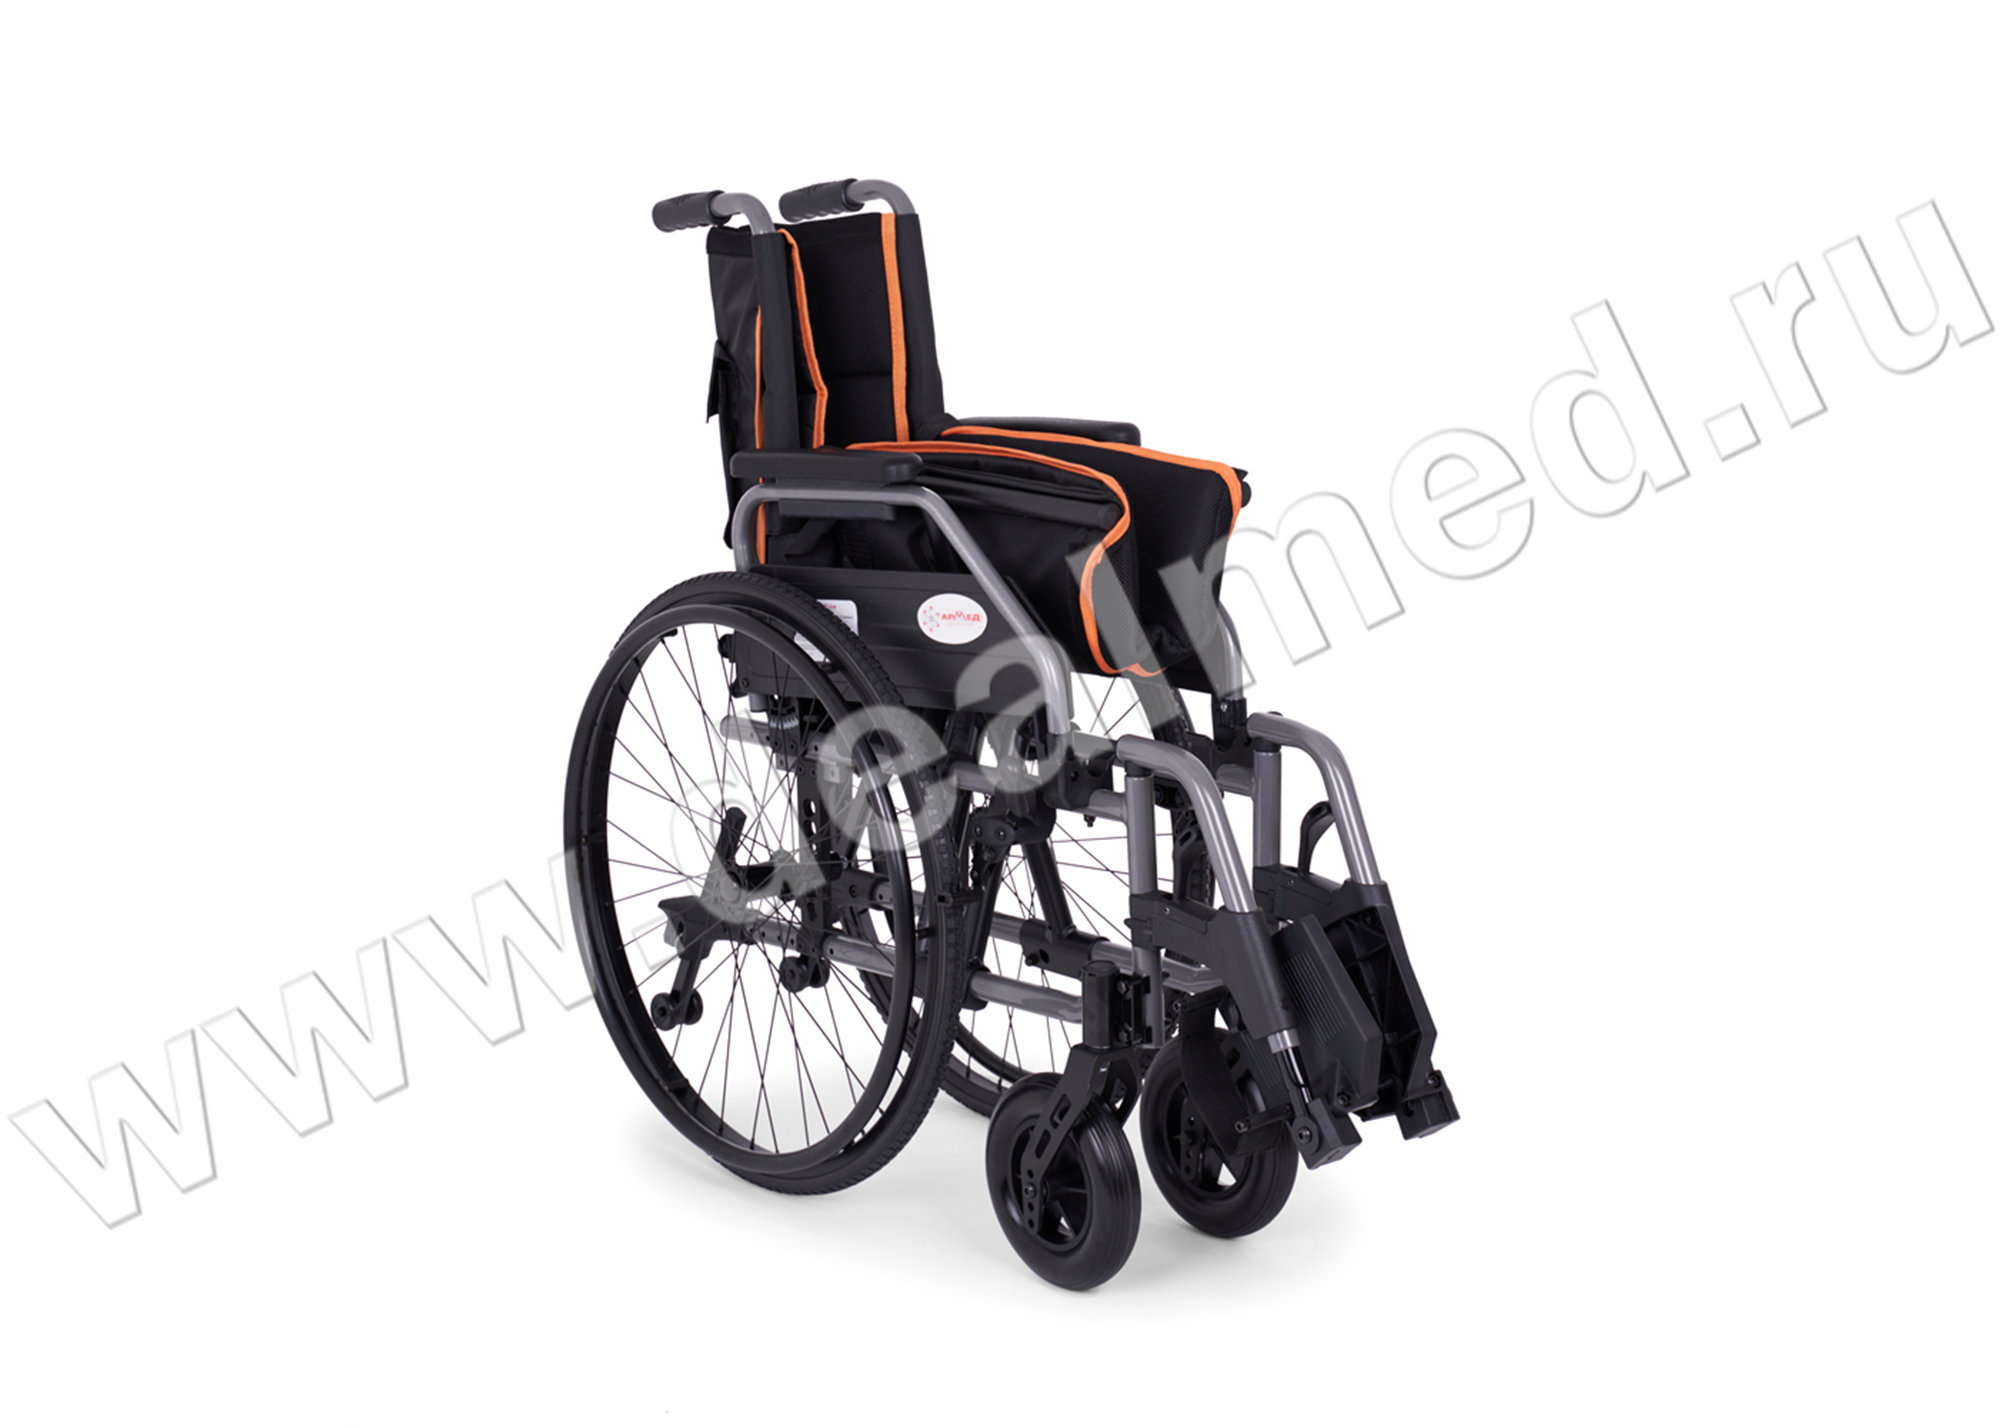 Кресло-коляска для инвалидов Armed 5000, Армед, Россия › купить, цена вМоскве, оптом и в розницу